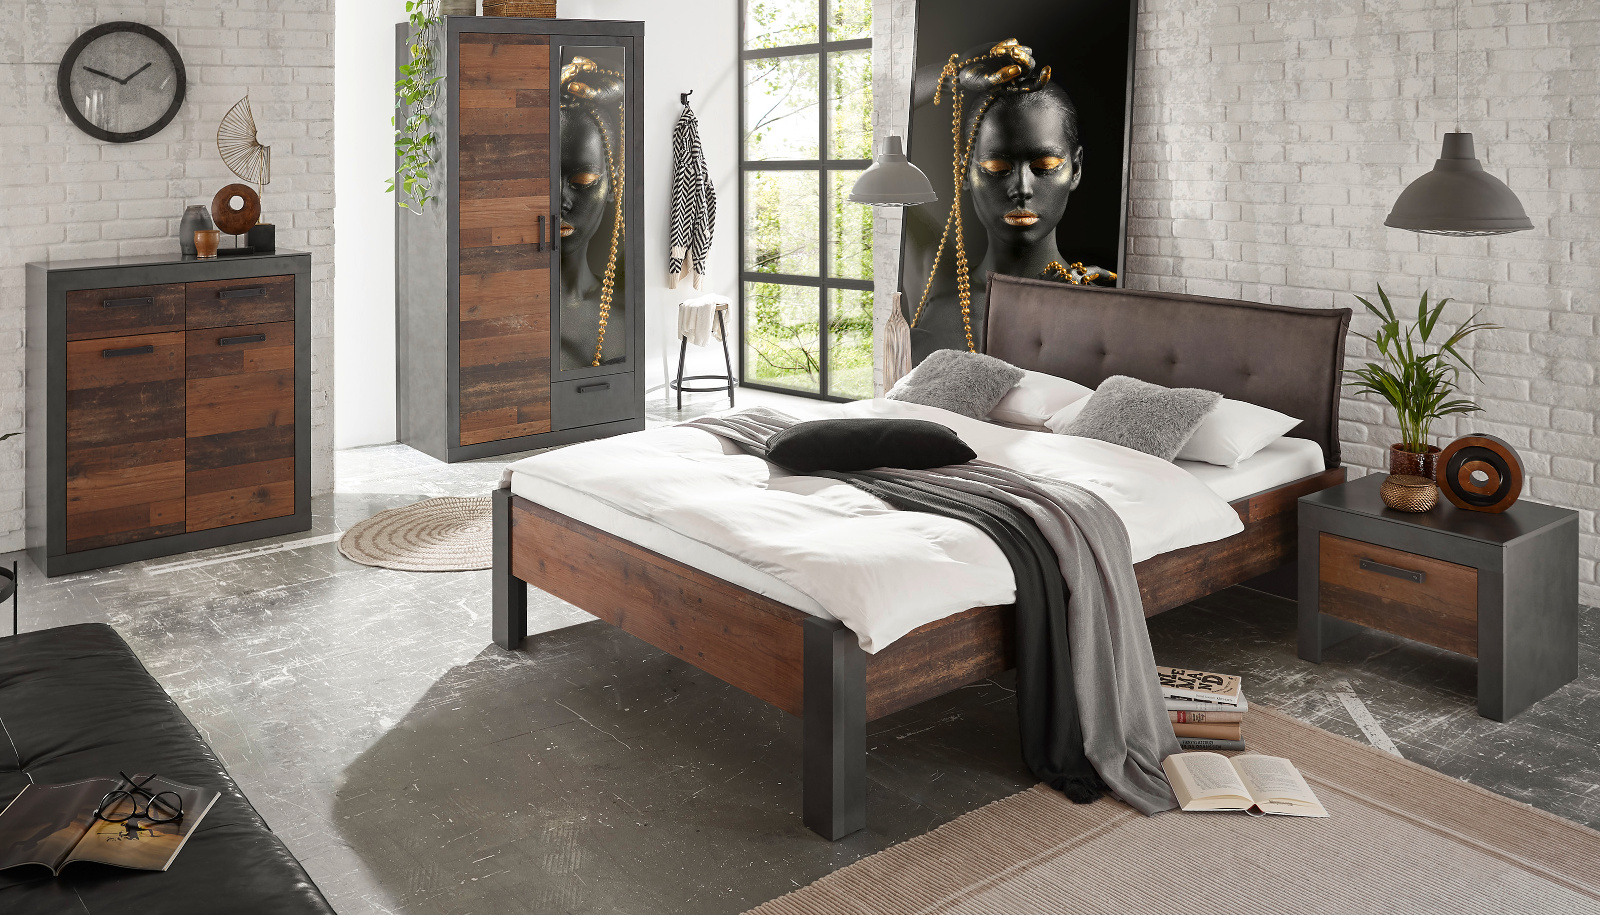 Schlafzimmer komplett "Ward" in Old Used Wood Shabby Design mit Matera grau Komplettzimmer mit Bett, Kleiderschrank, Kommode und Nachttisch